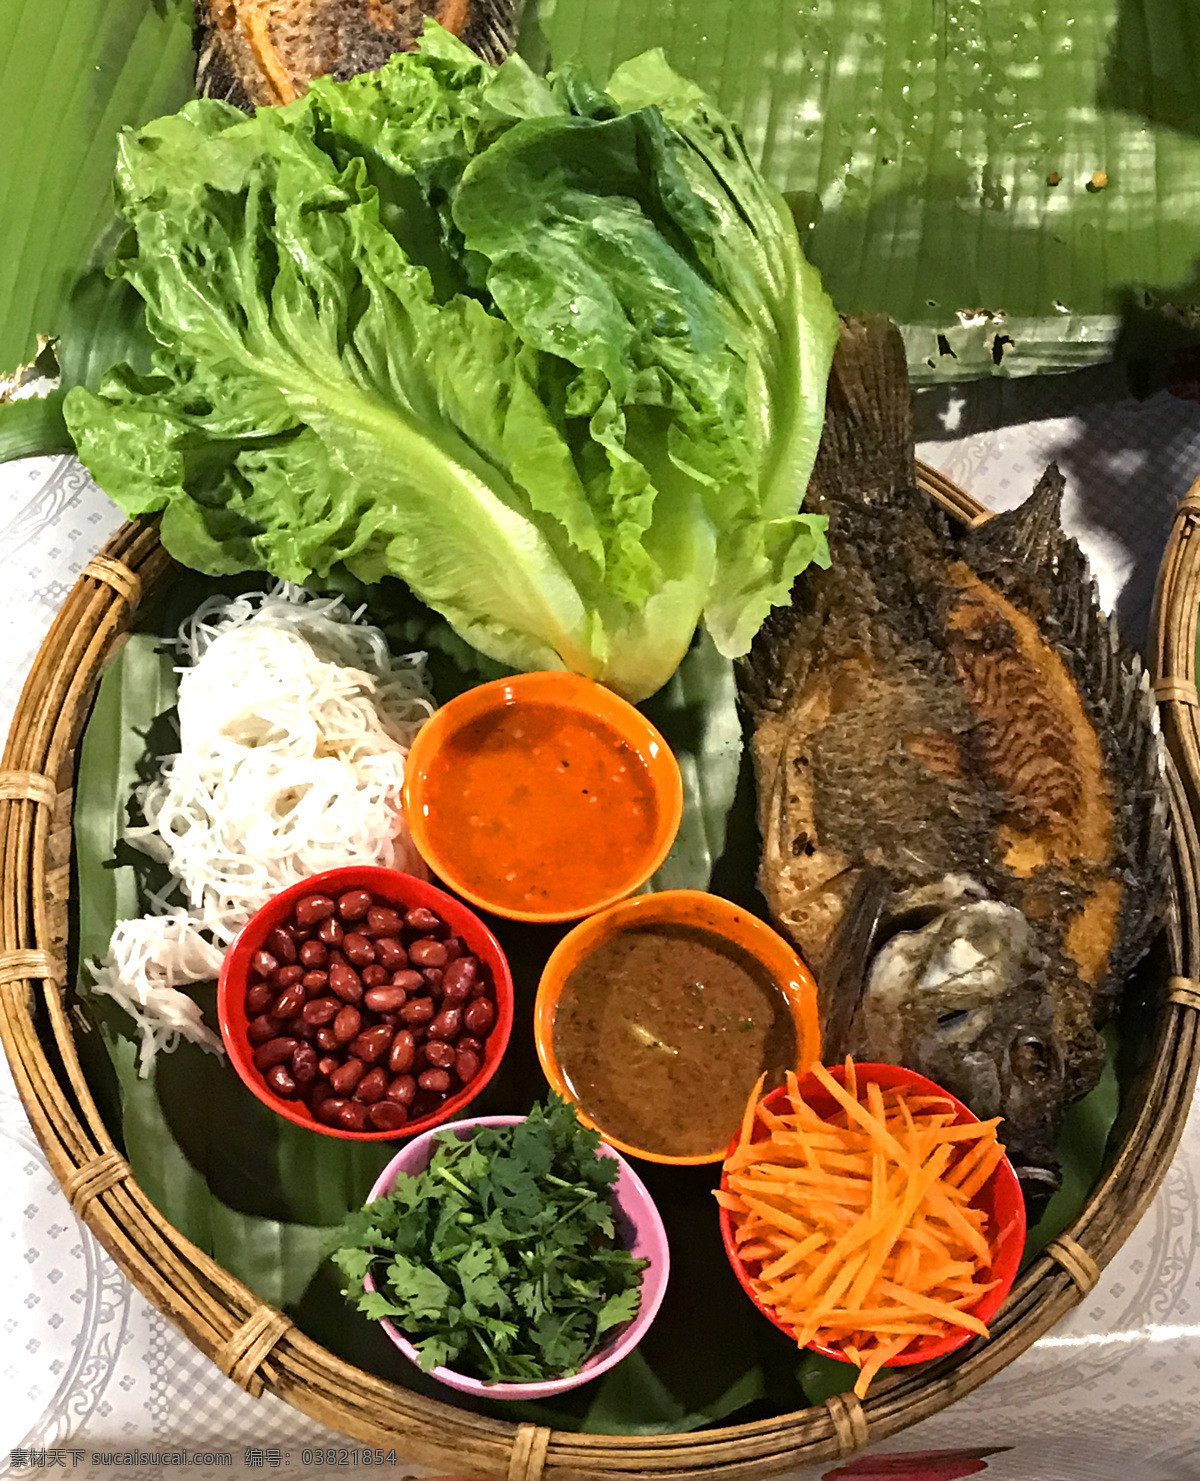 菜包鱼 中国 云南 西双版纳 傣族 美食 鱼 蔬菜 特色 菜肴 民族风味 竖构图 餐饮美食 传统美食